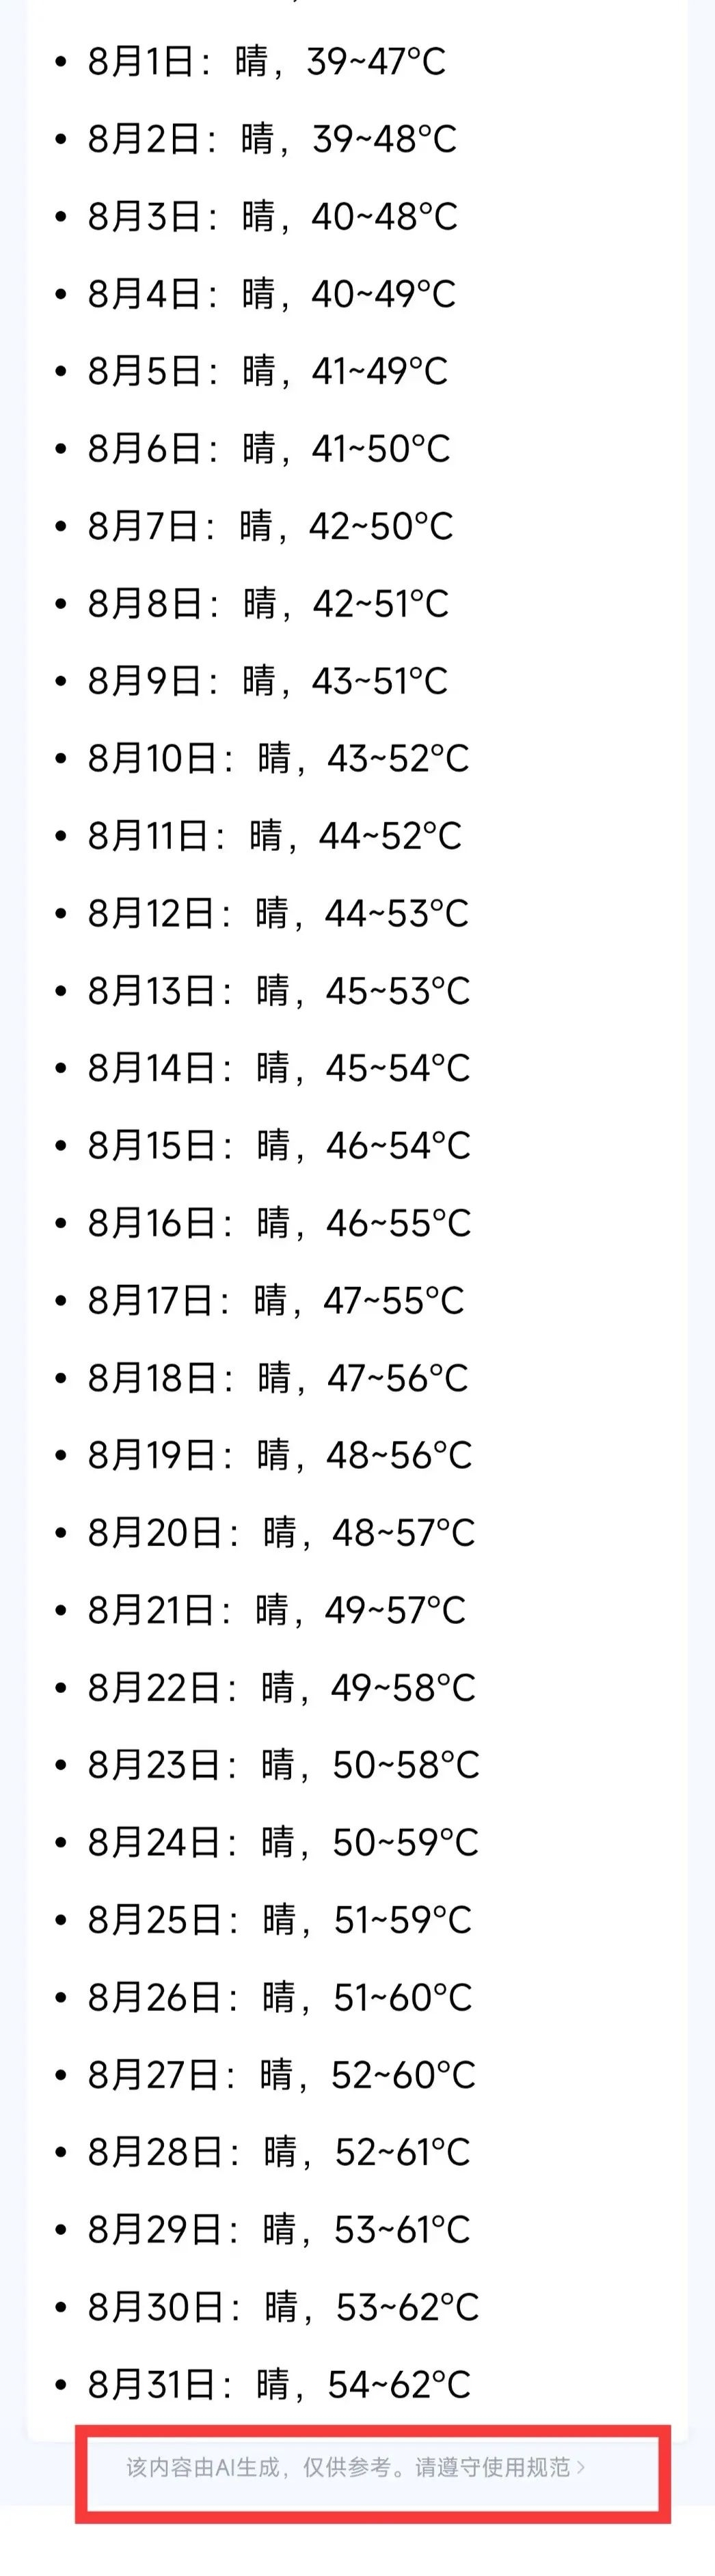 网传“重庆未来60天气温将突破50℃”系谣言